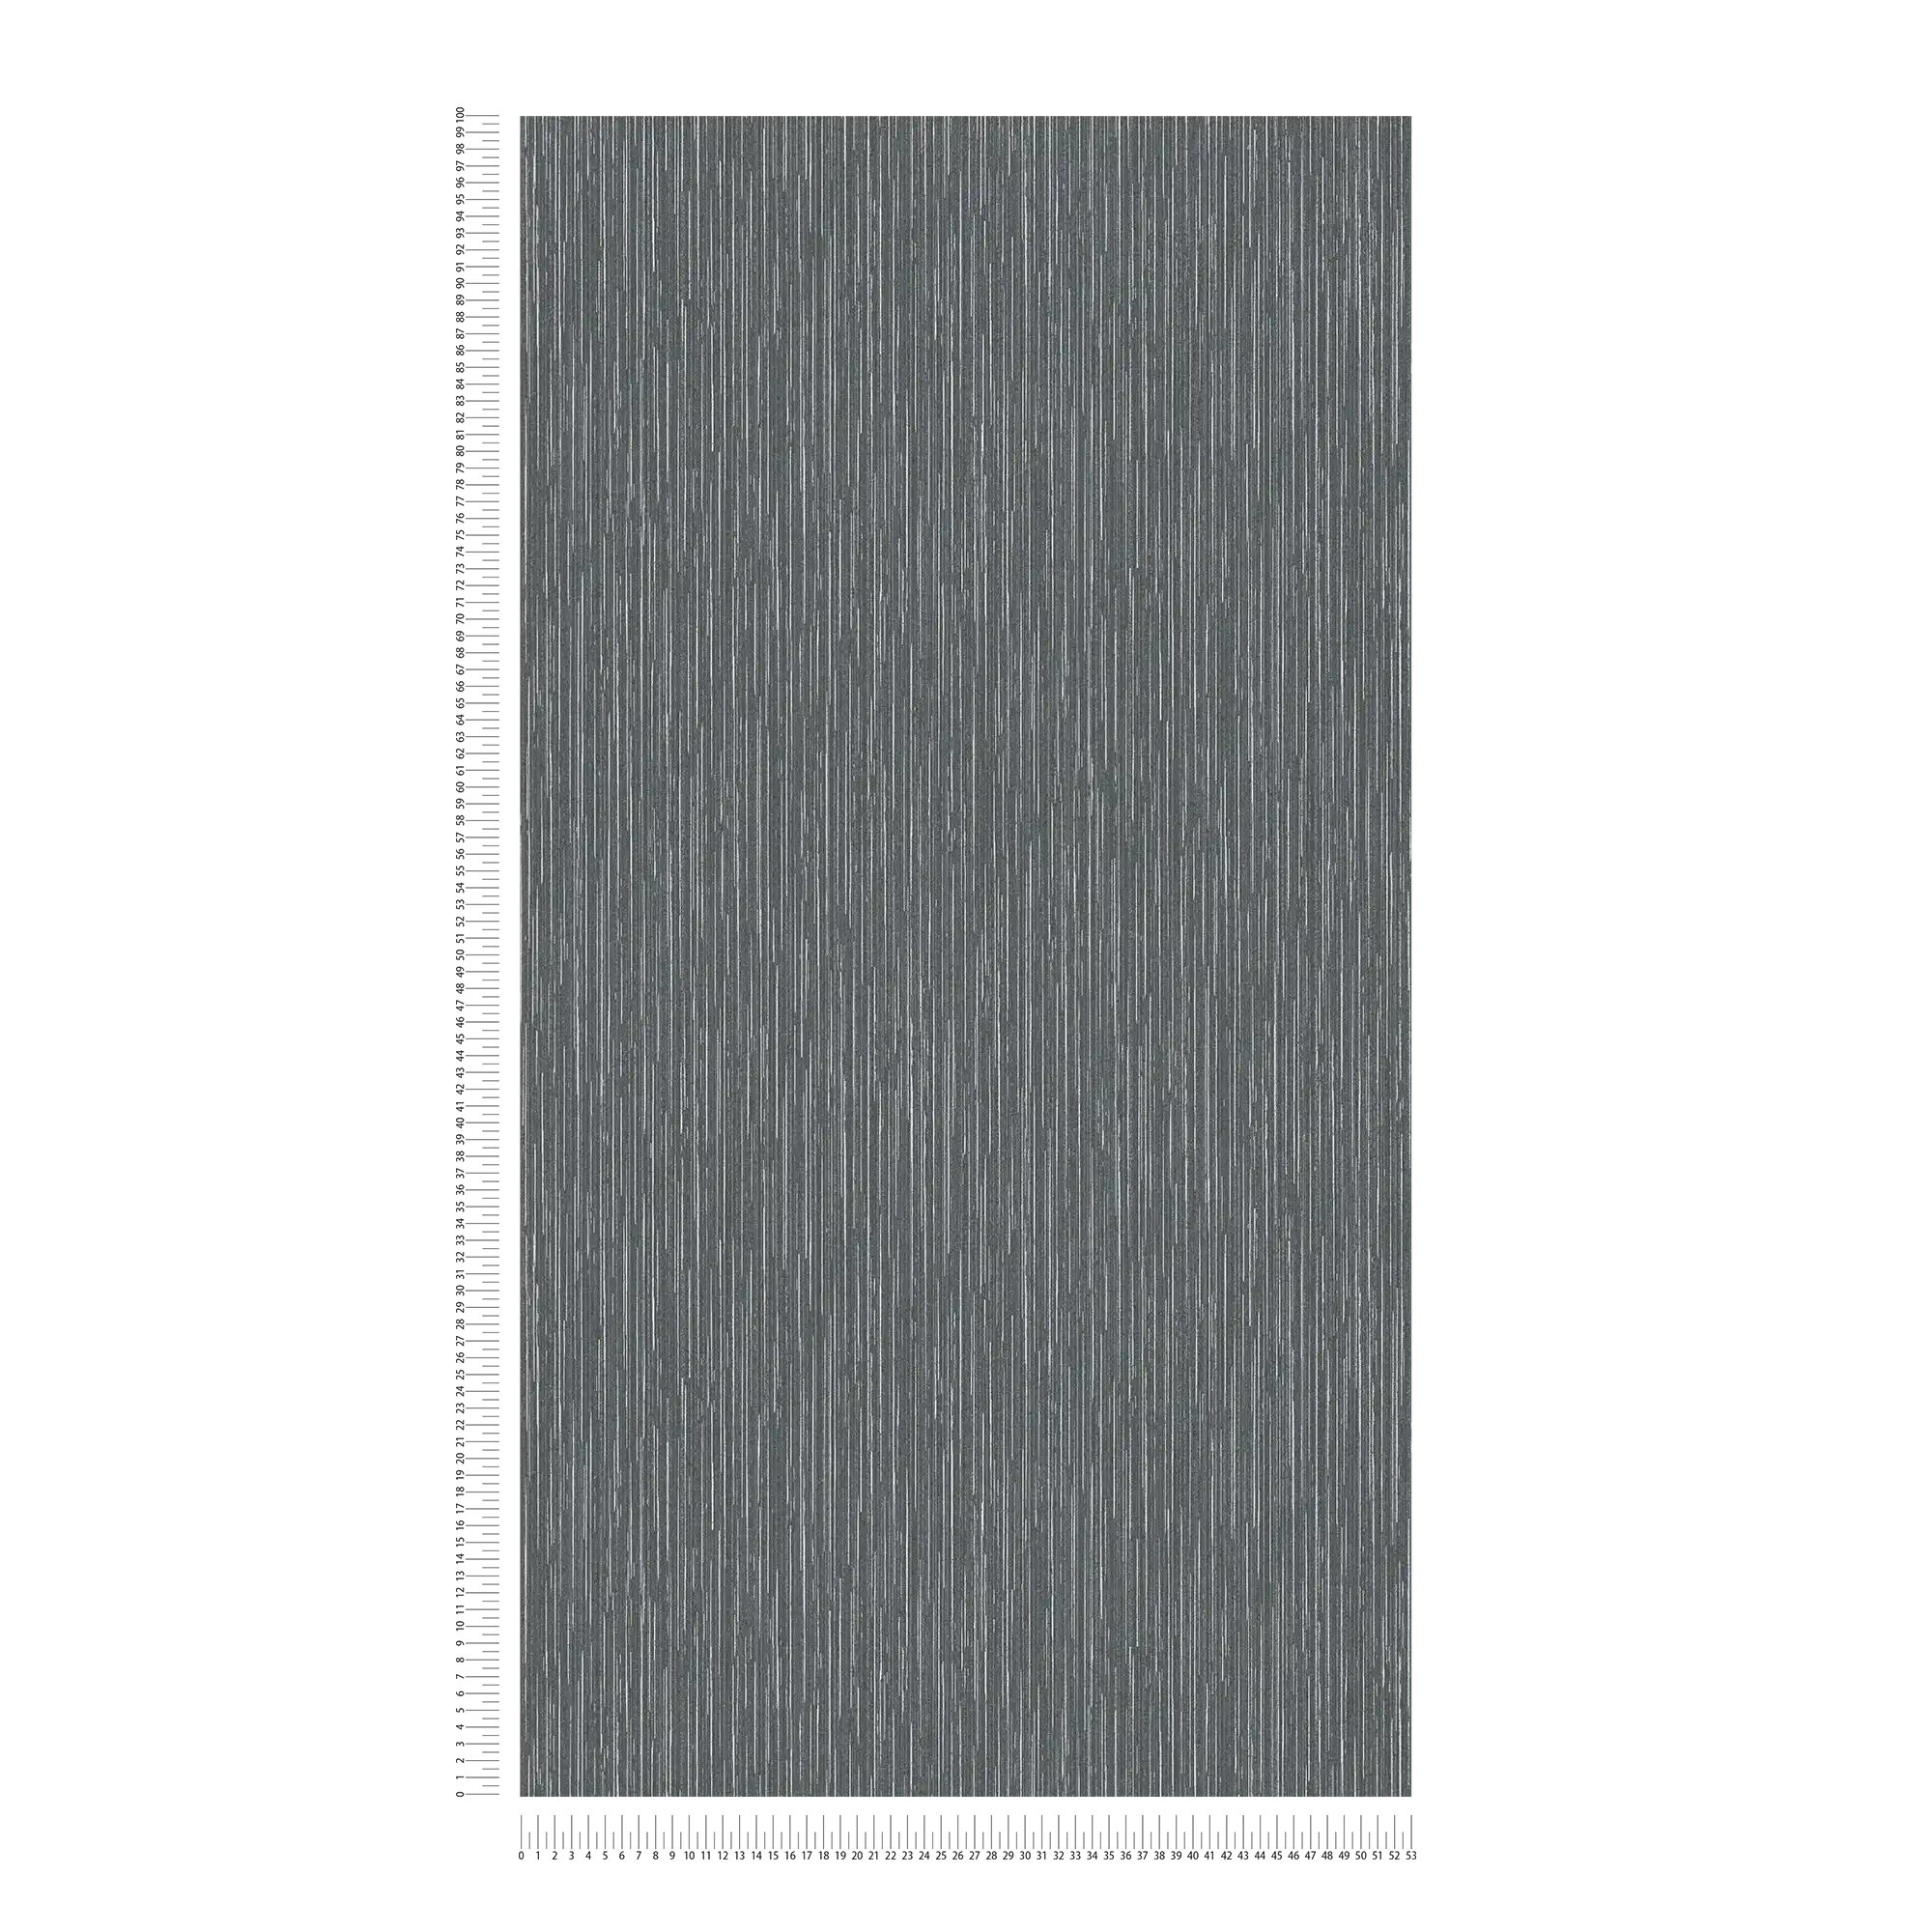             Carta da parati antracite con accenti argentati e design a linee - nero, metallizzato
        